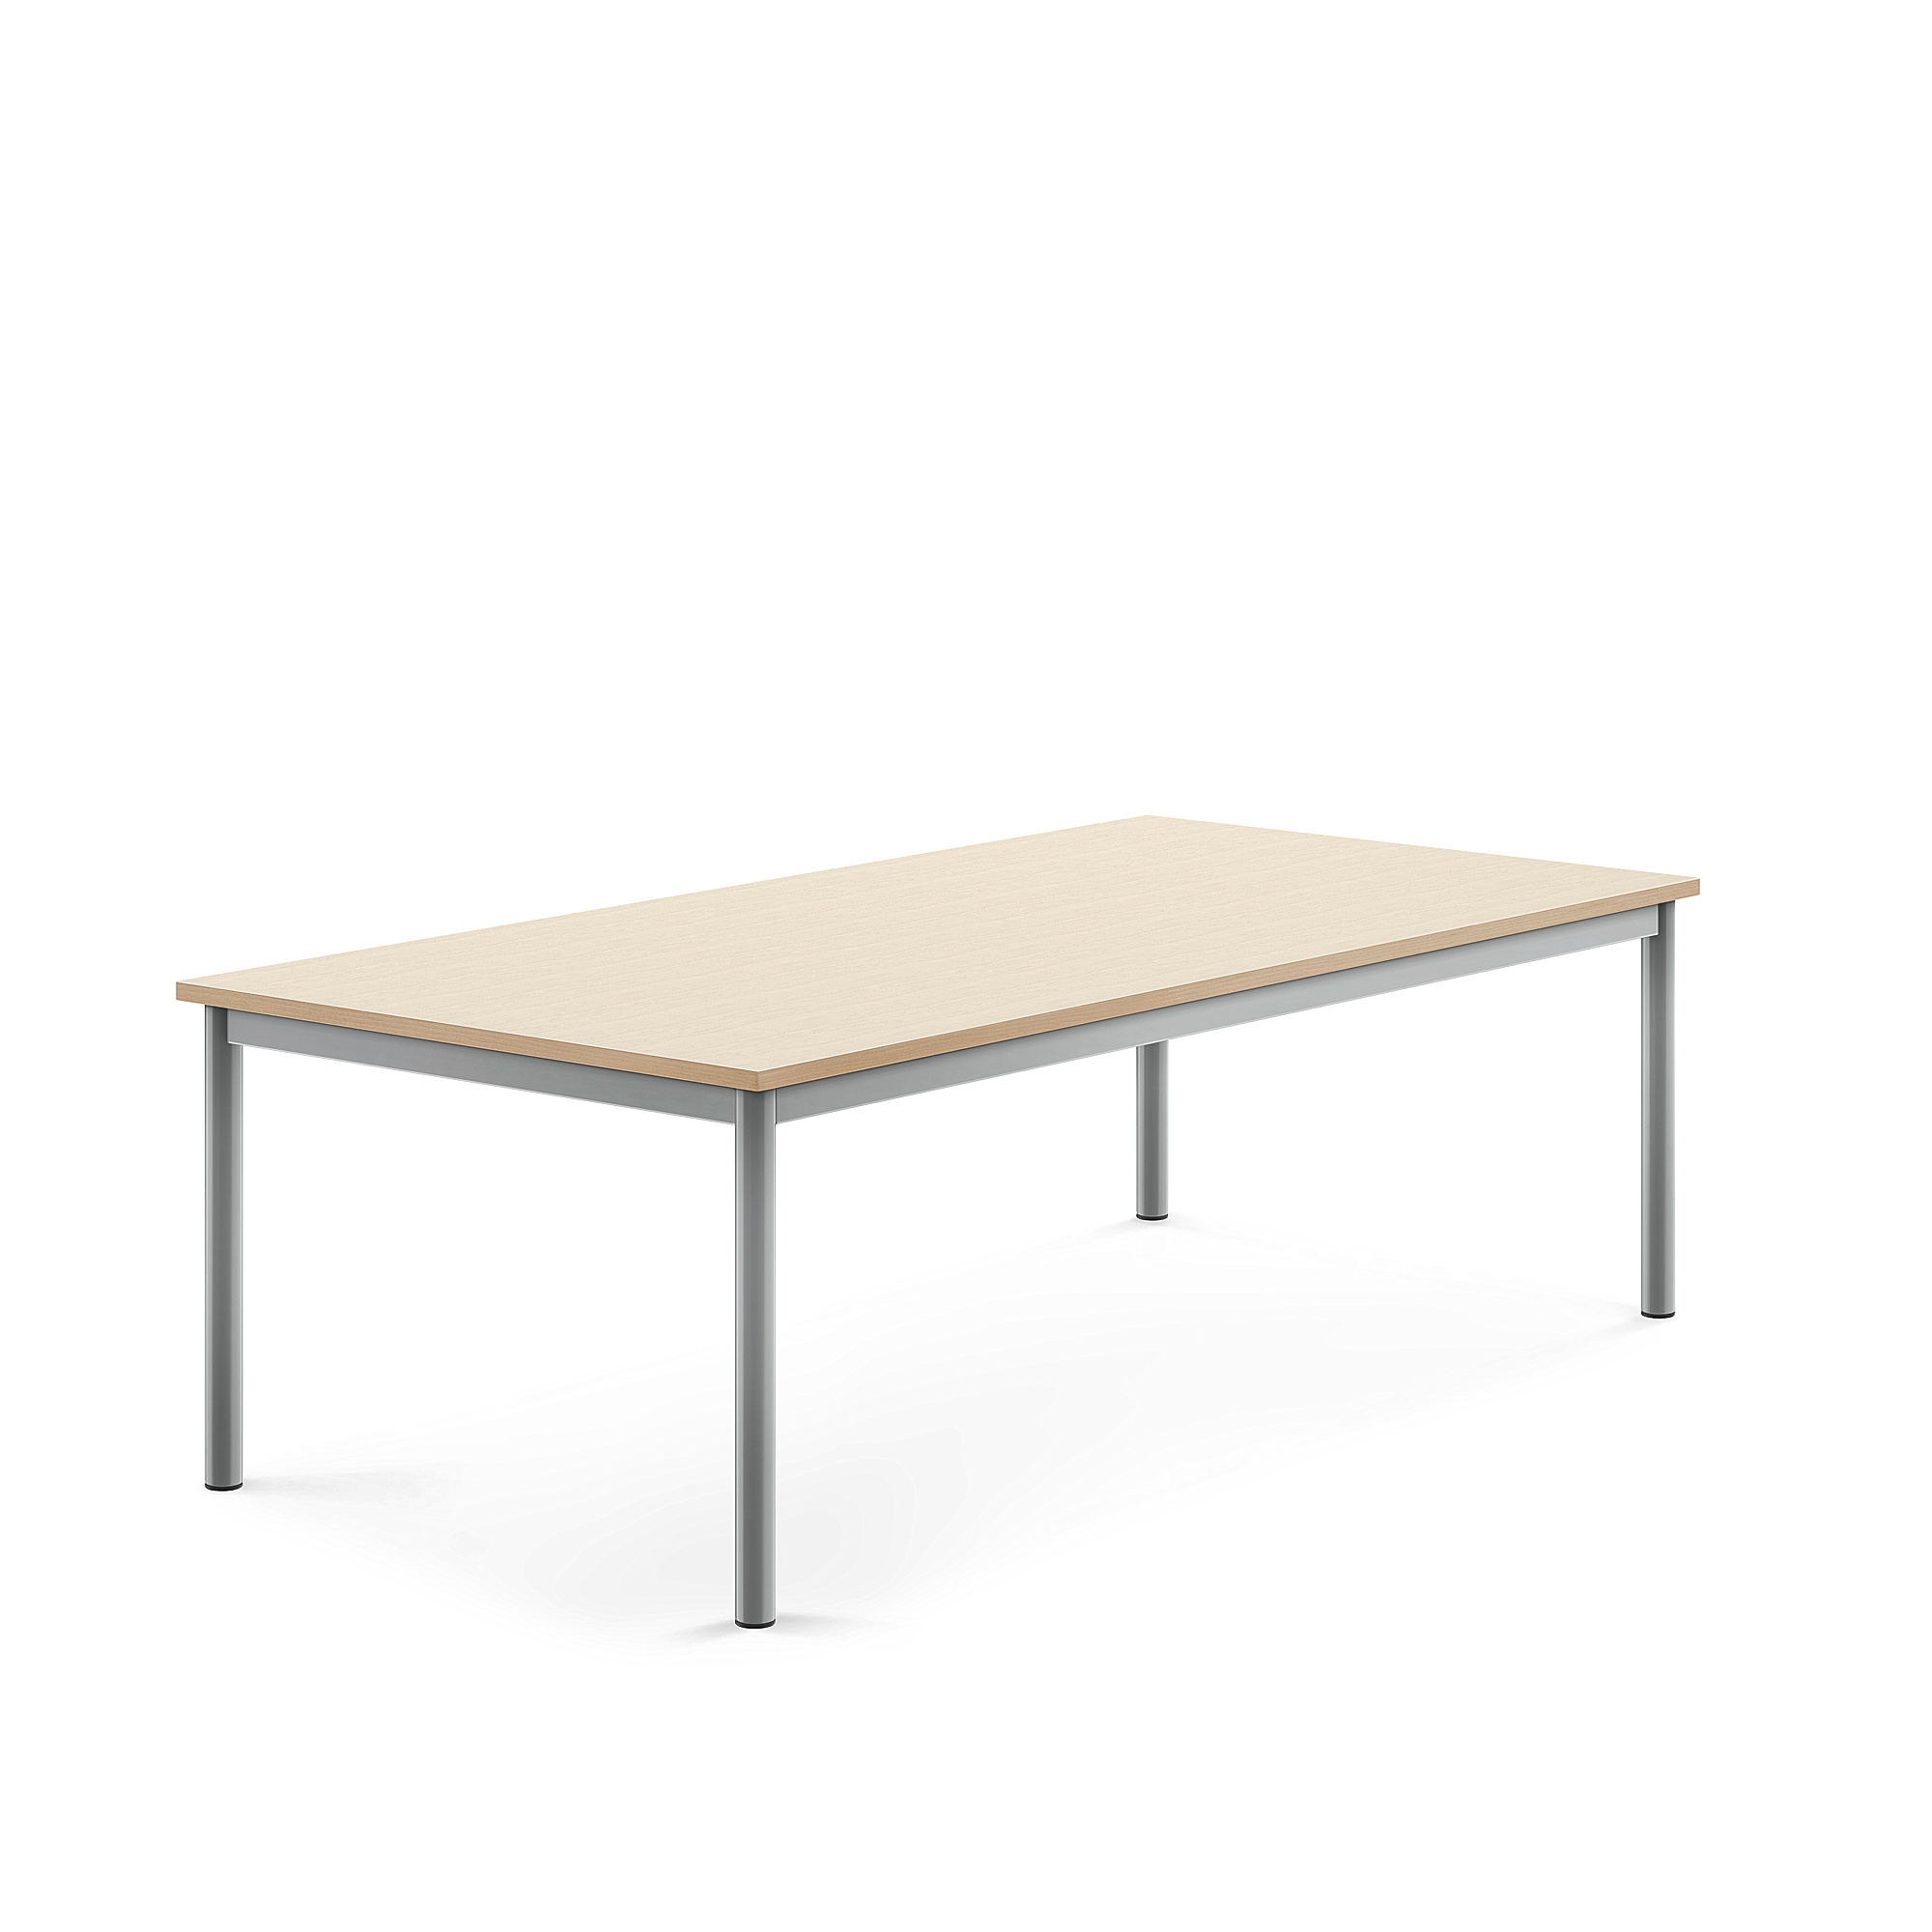 Stůl BORÅS, 1600x800x500 mm, stříbrné nohy, HPL deska, bříza